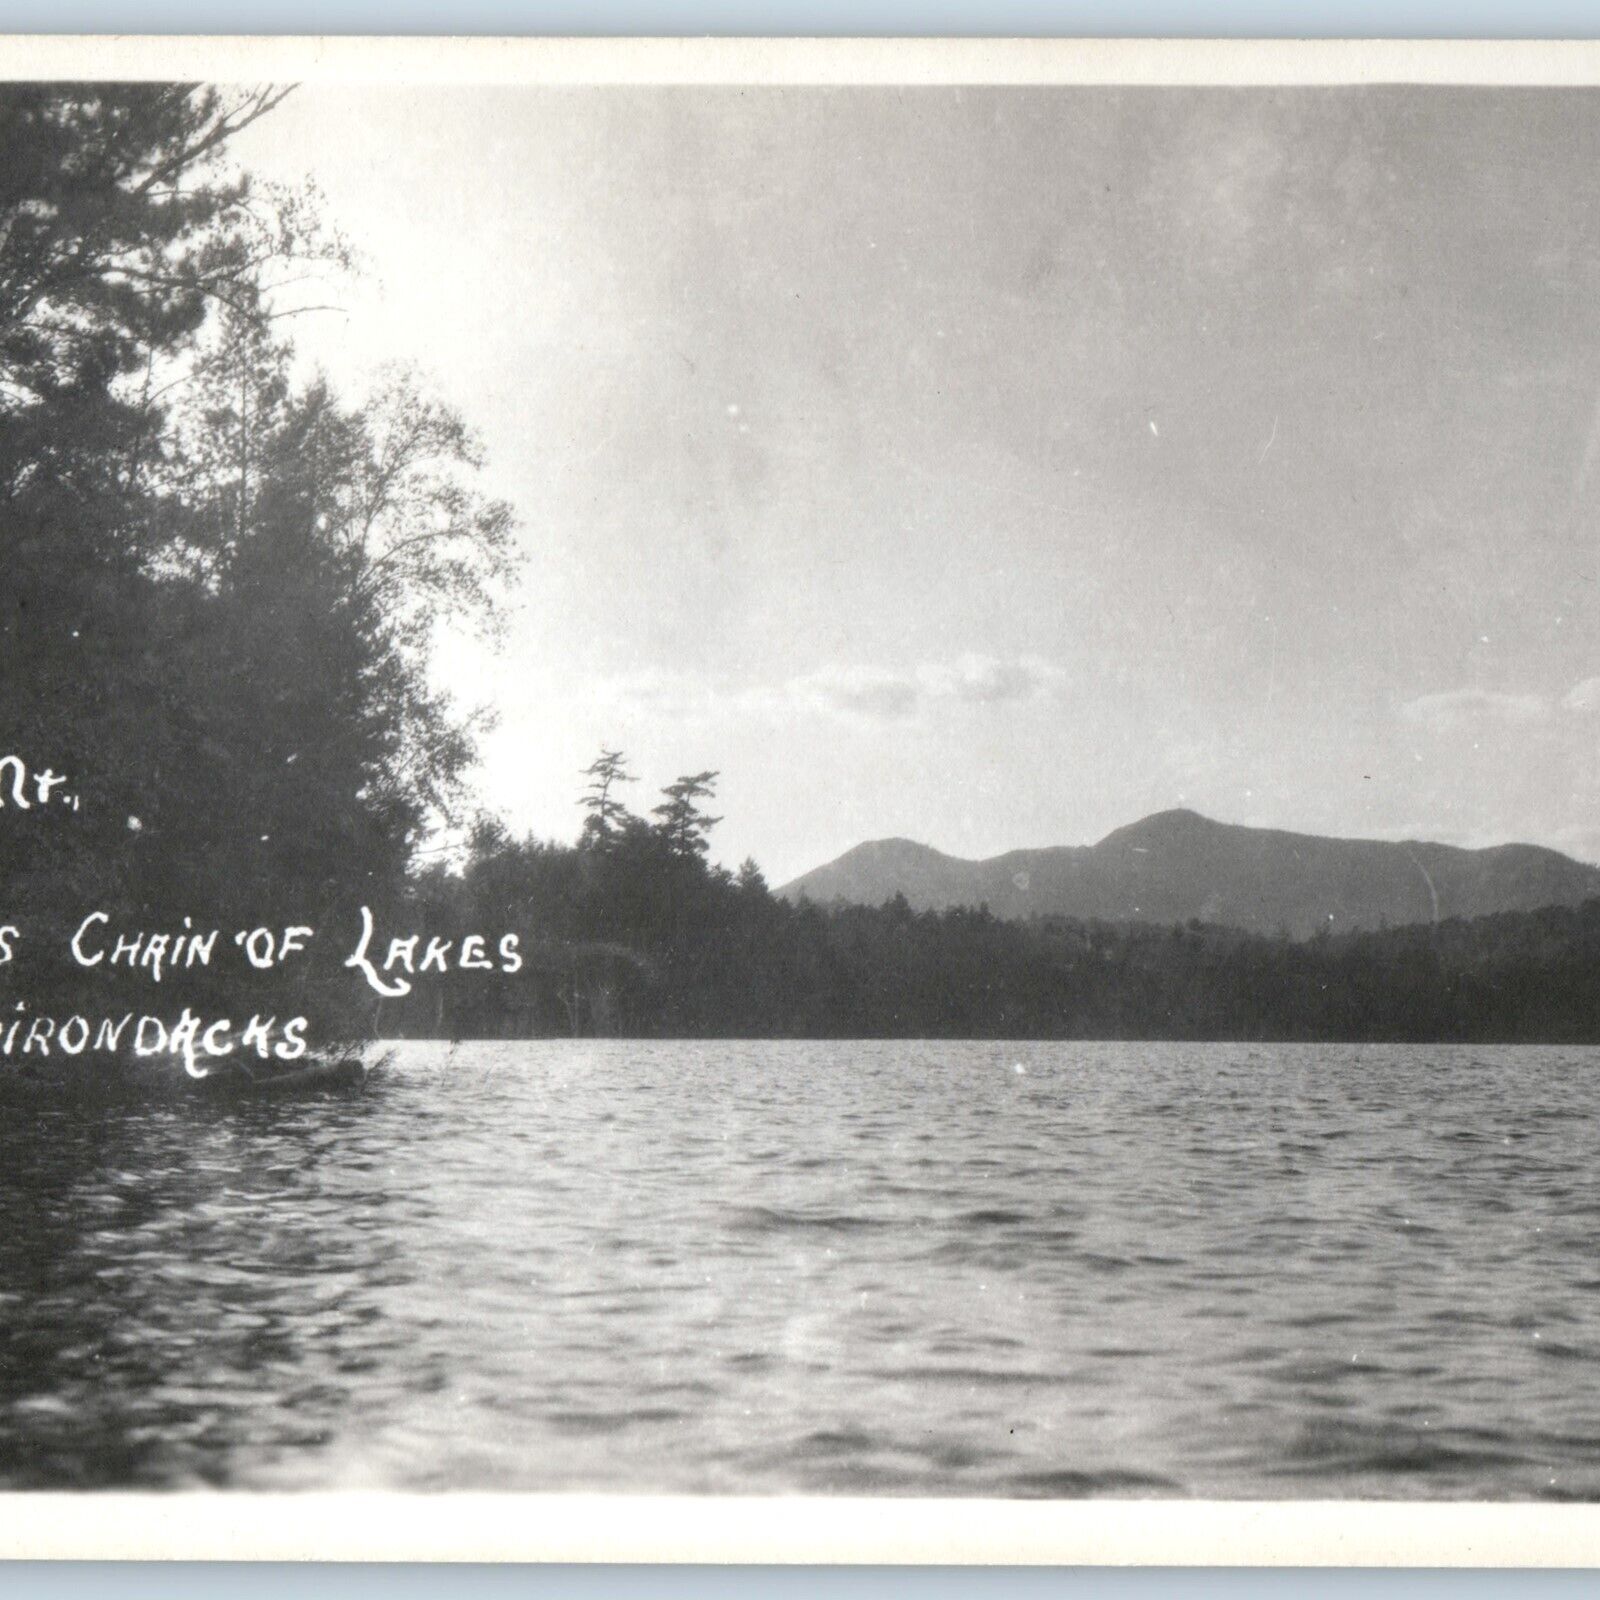 c1940s Adirondacks NY RPPC St. Regis Mountain Saranac Lake Chain Real Photo A193